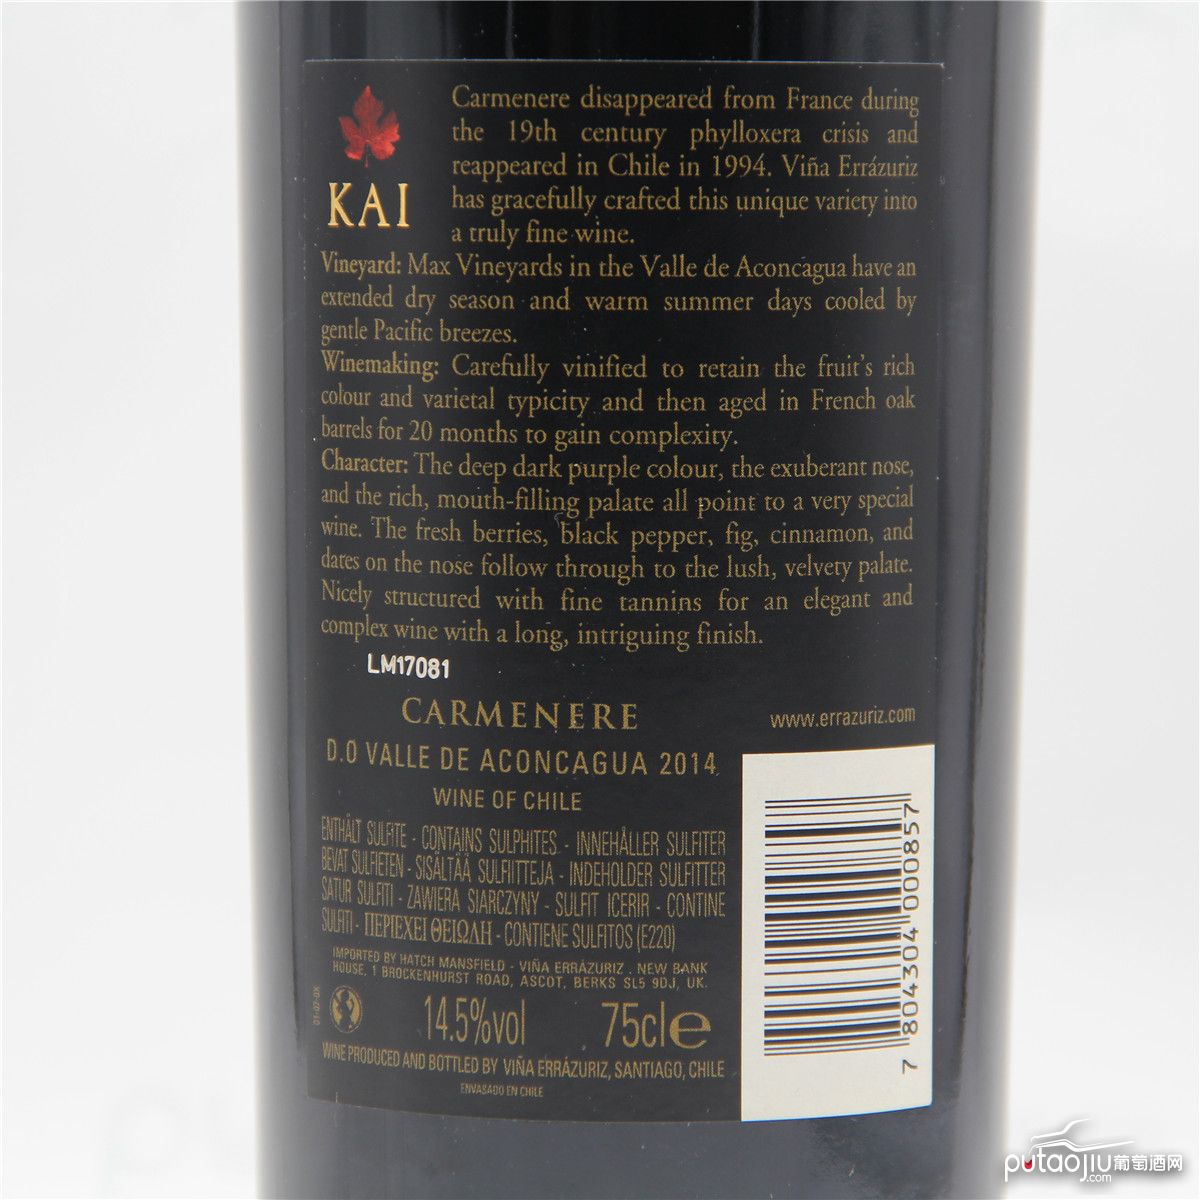 智利阿空加瓜谷伊拉苏酒庄西拉卡门内尔凯顶级珍藏干红葡萄酒